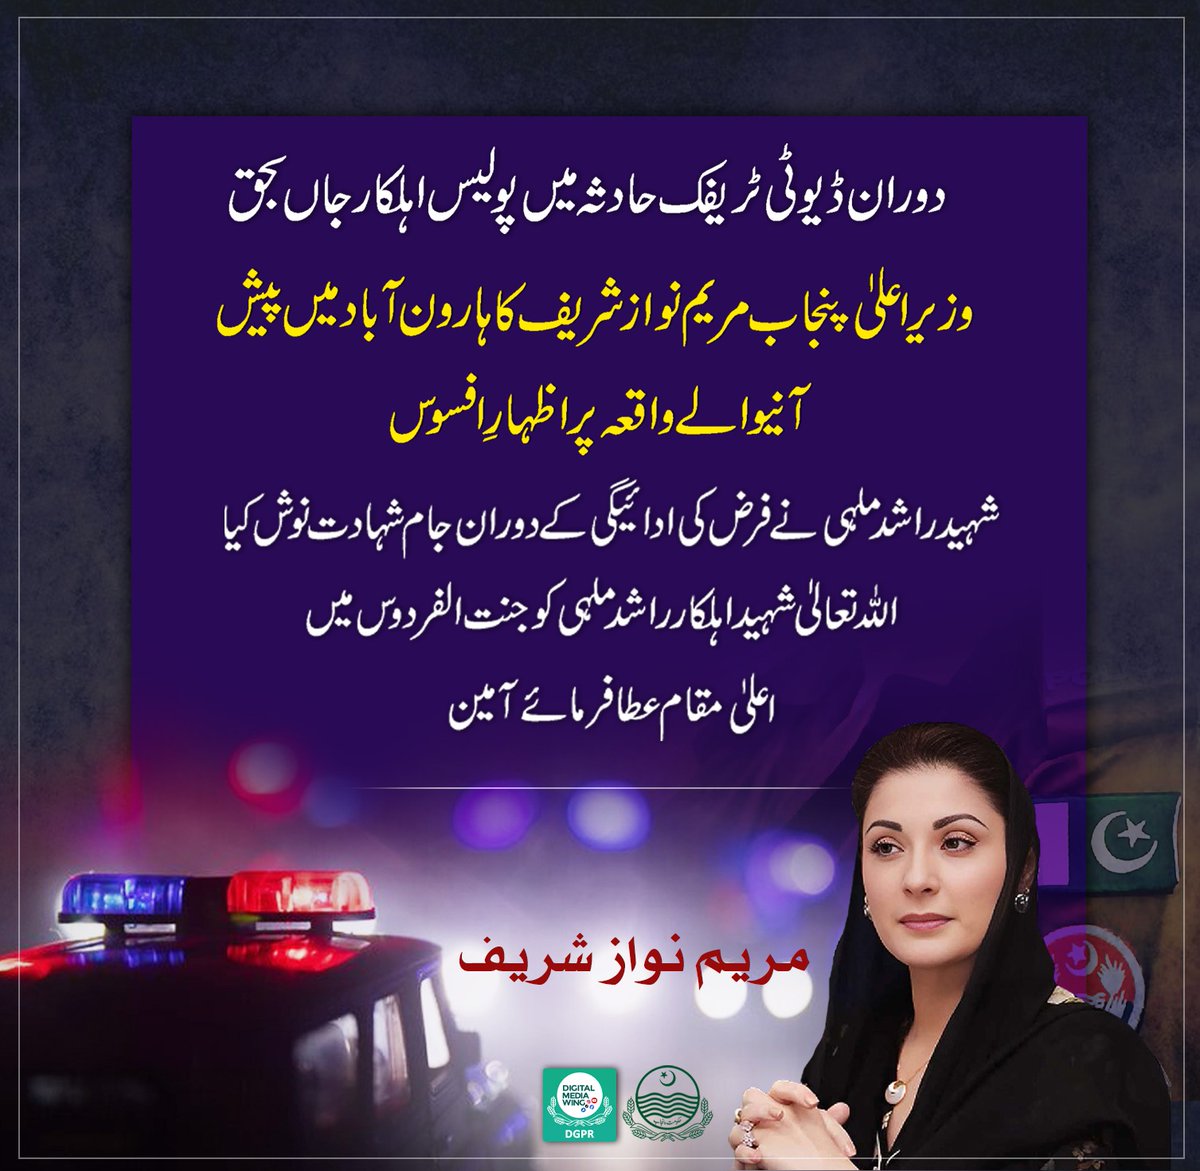 دوران ڈیوٹی ٹریفک حادثہ میں پولیس اہلکار جاں بحق وزیر اعلیٰ پنجاب @MaryamNSharif کا ہارون آباد میں پیش آنیوالے واقعہ پر اظہارِ افسوس